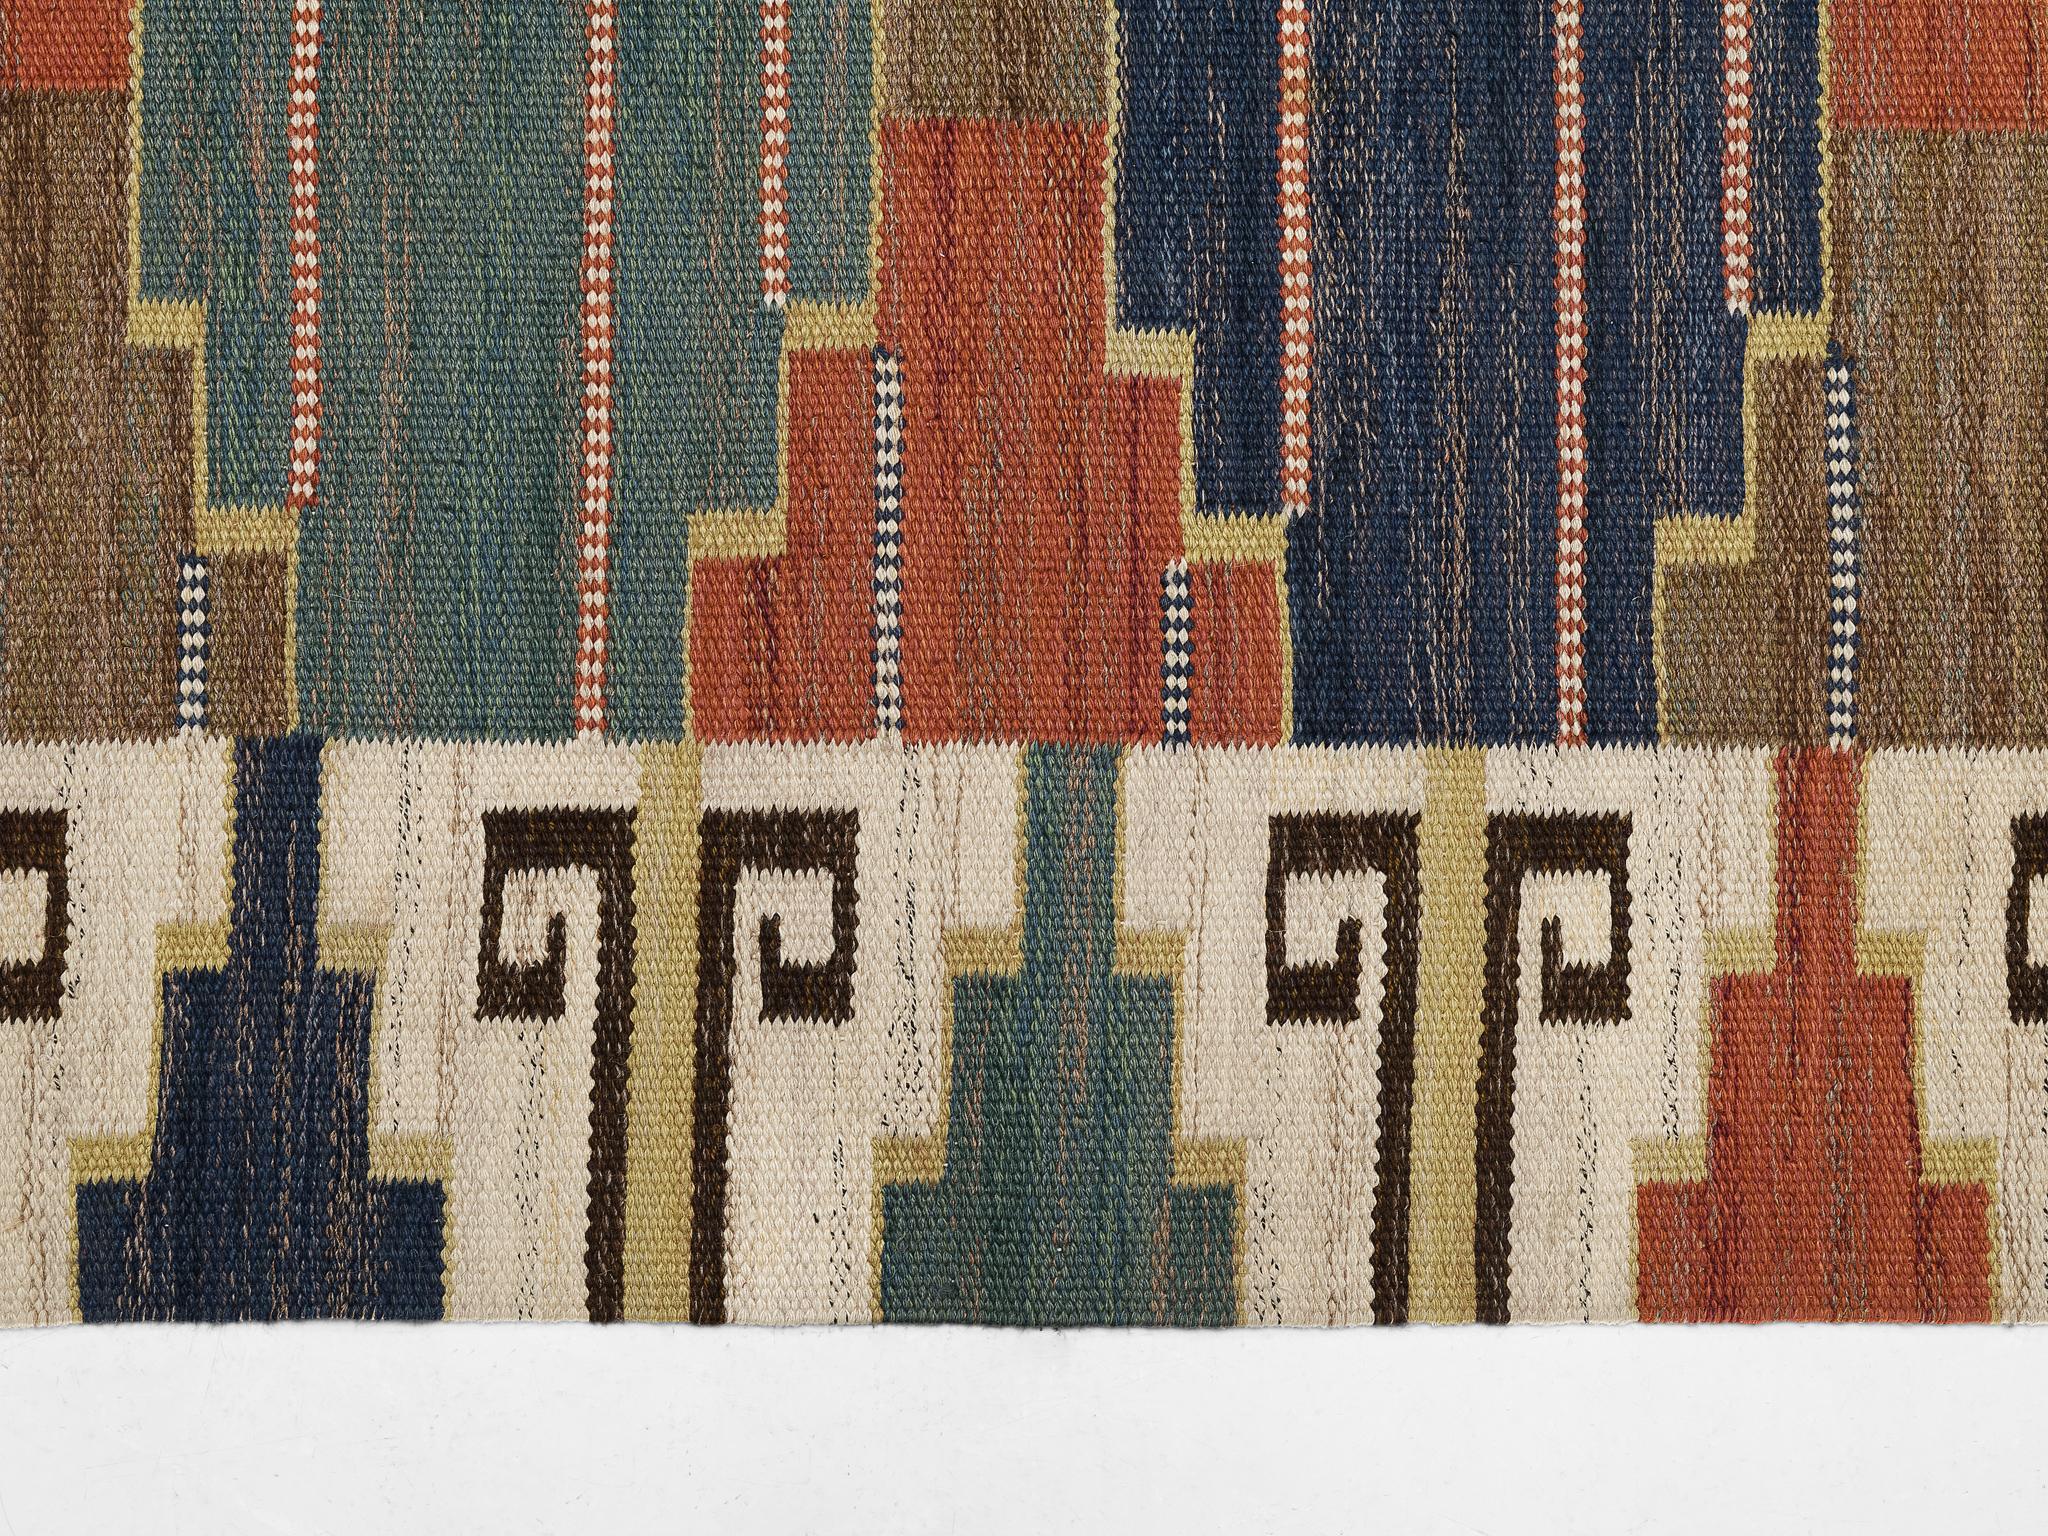 Märta Måås Fjetterström Handwoven 'Blå Heden' Carpet in Wool  For Sale 1